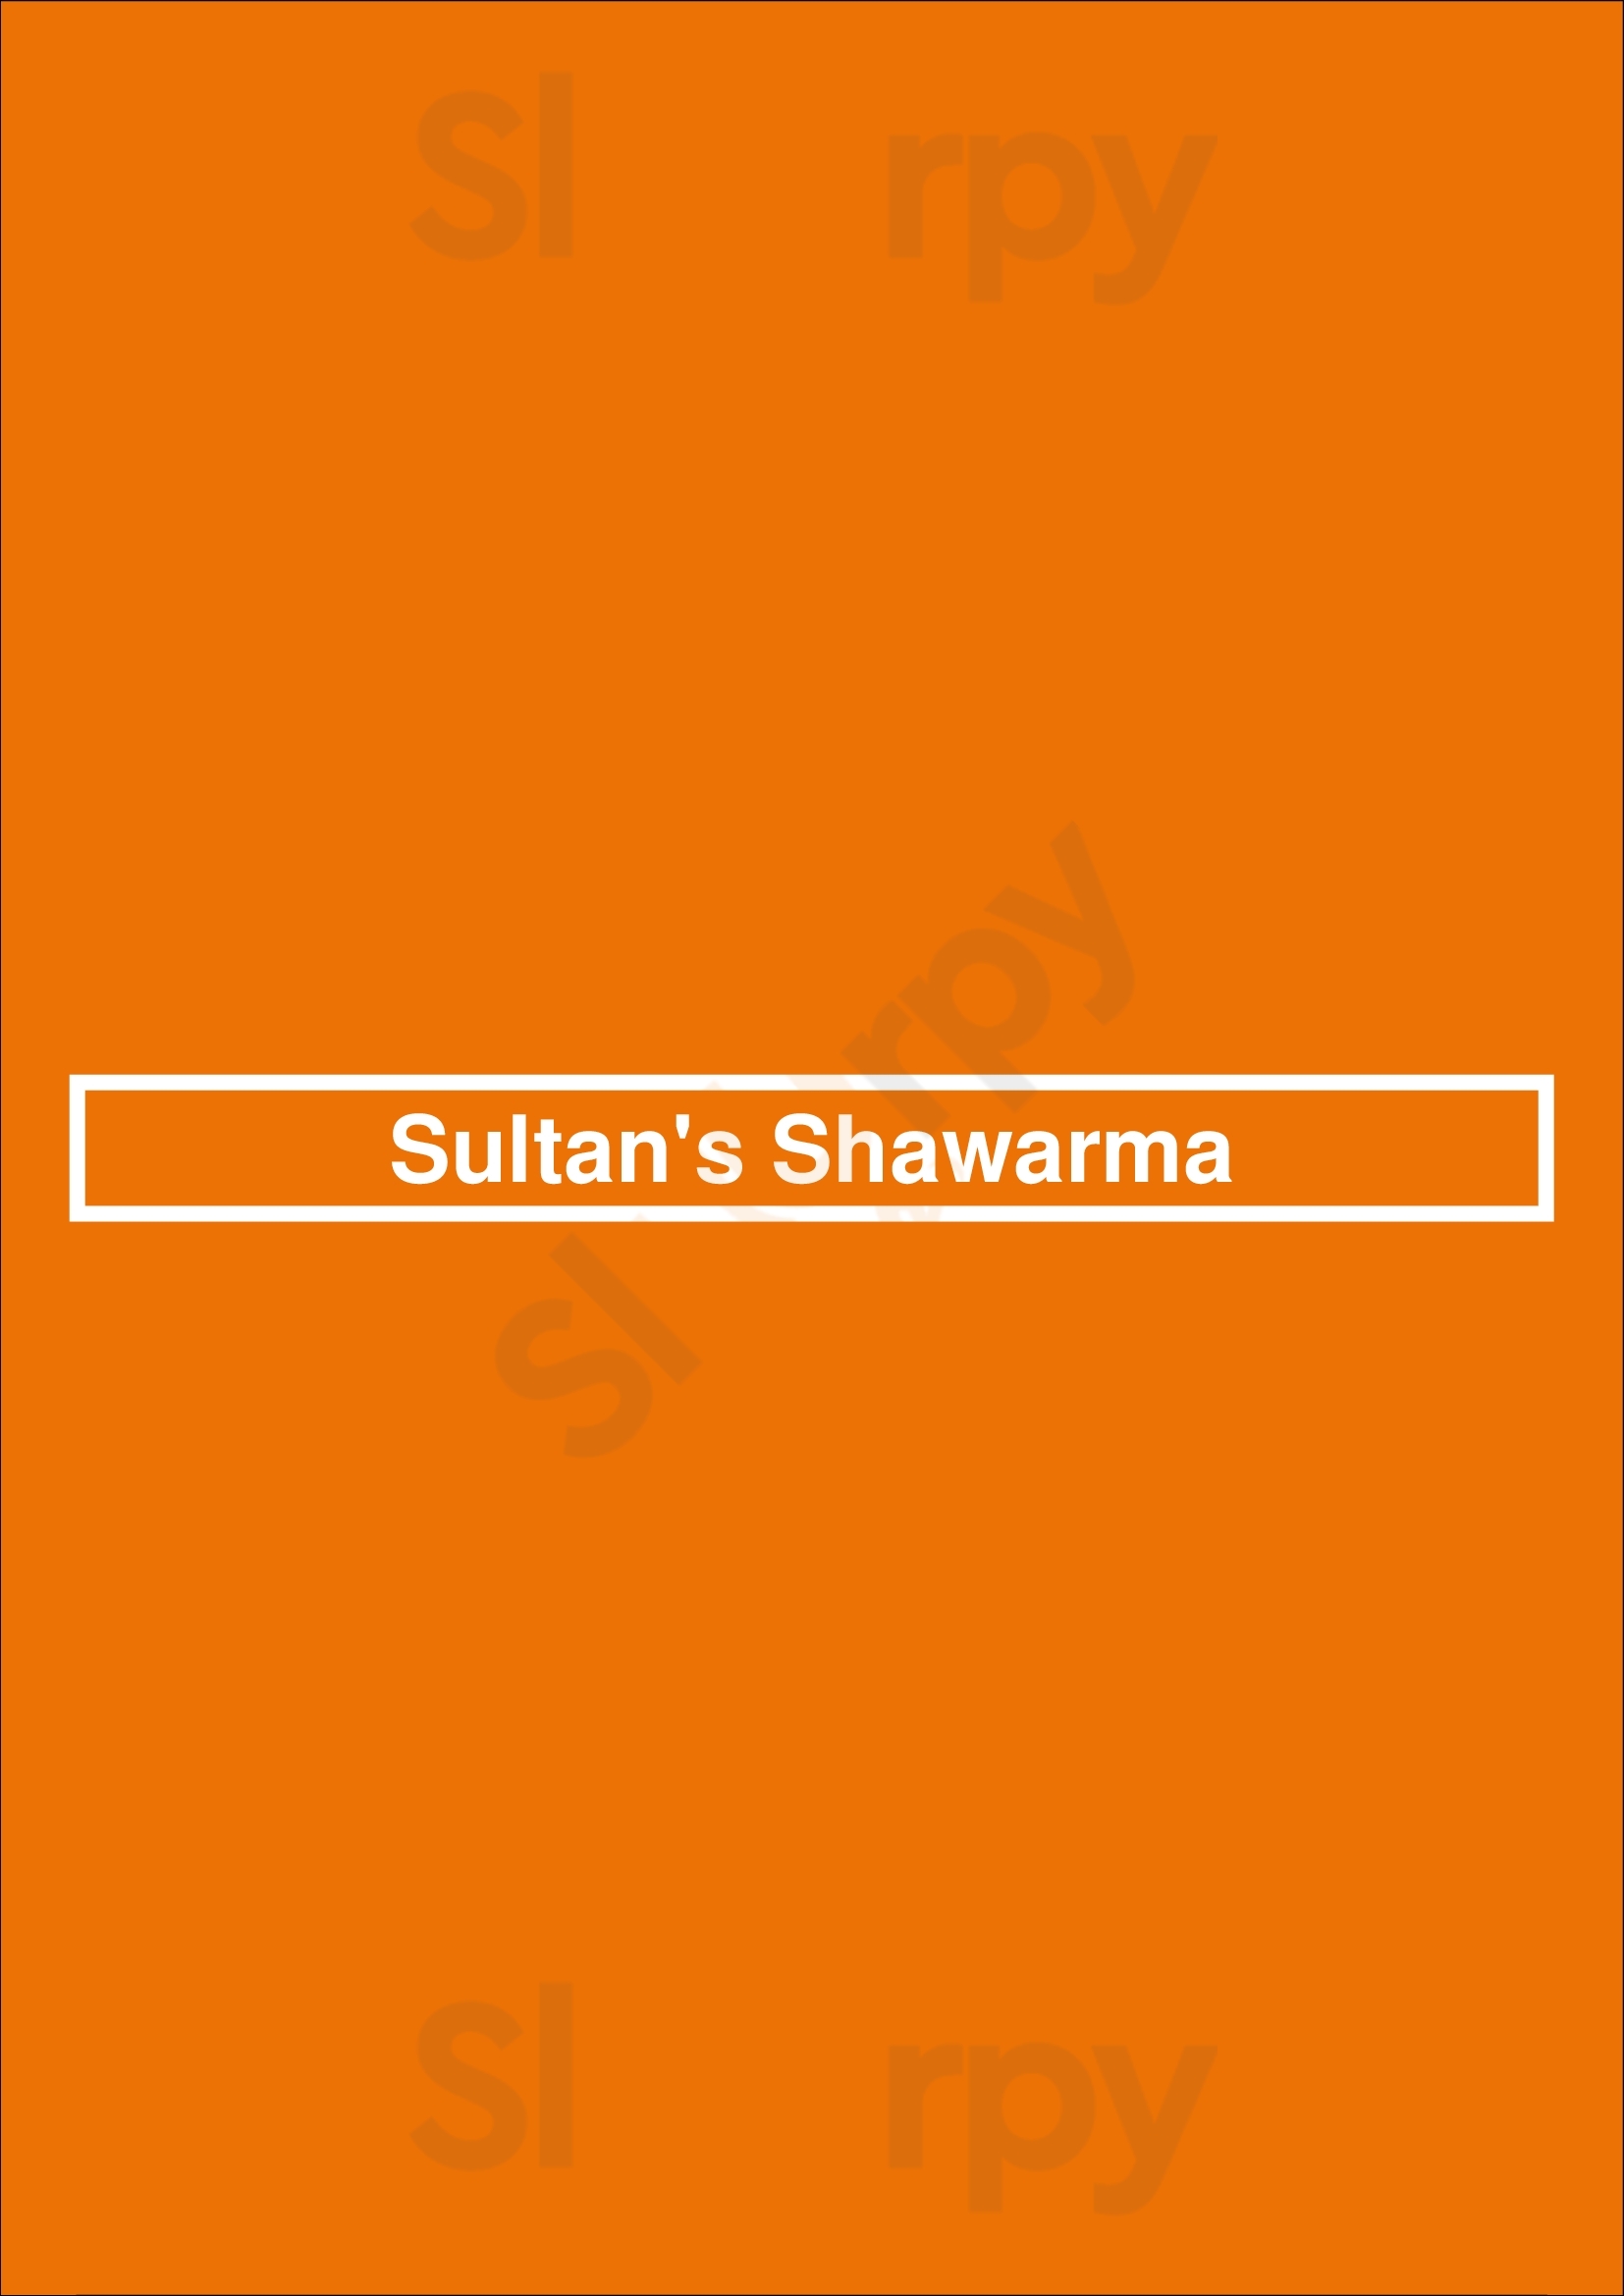 Sultan's Shawarma Winnipeg Menu - 1